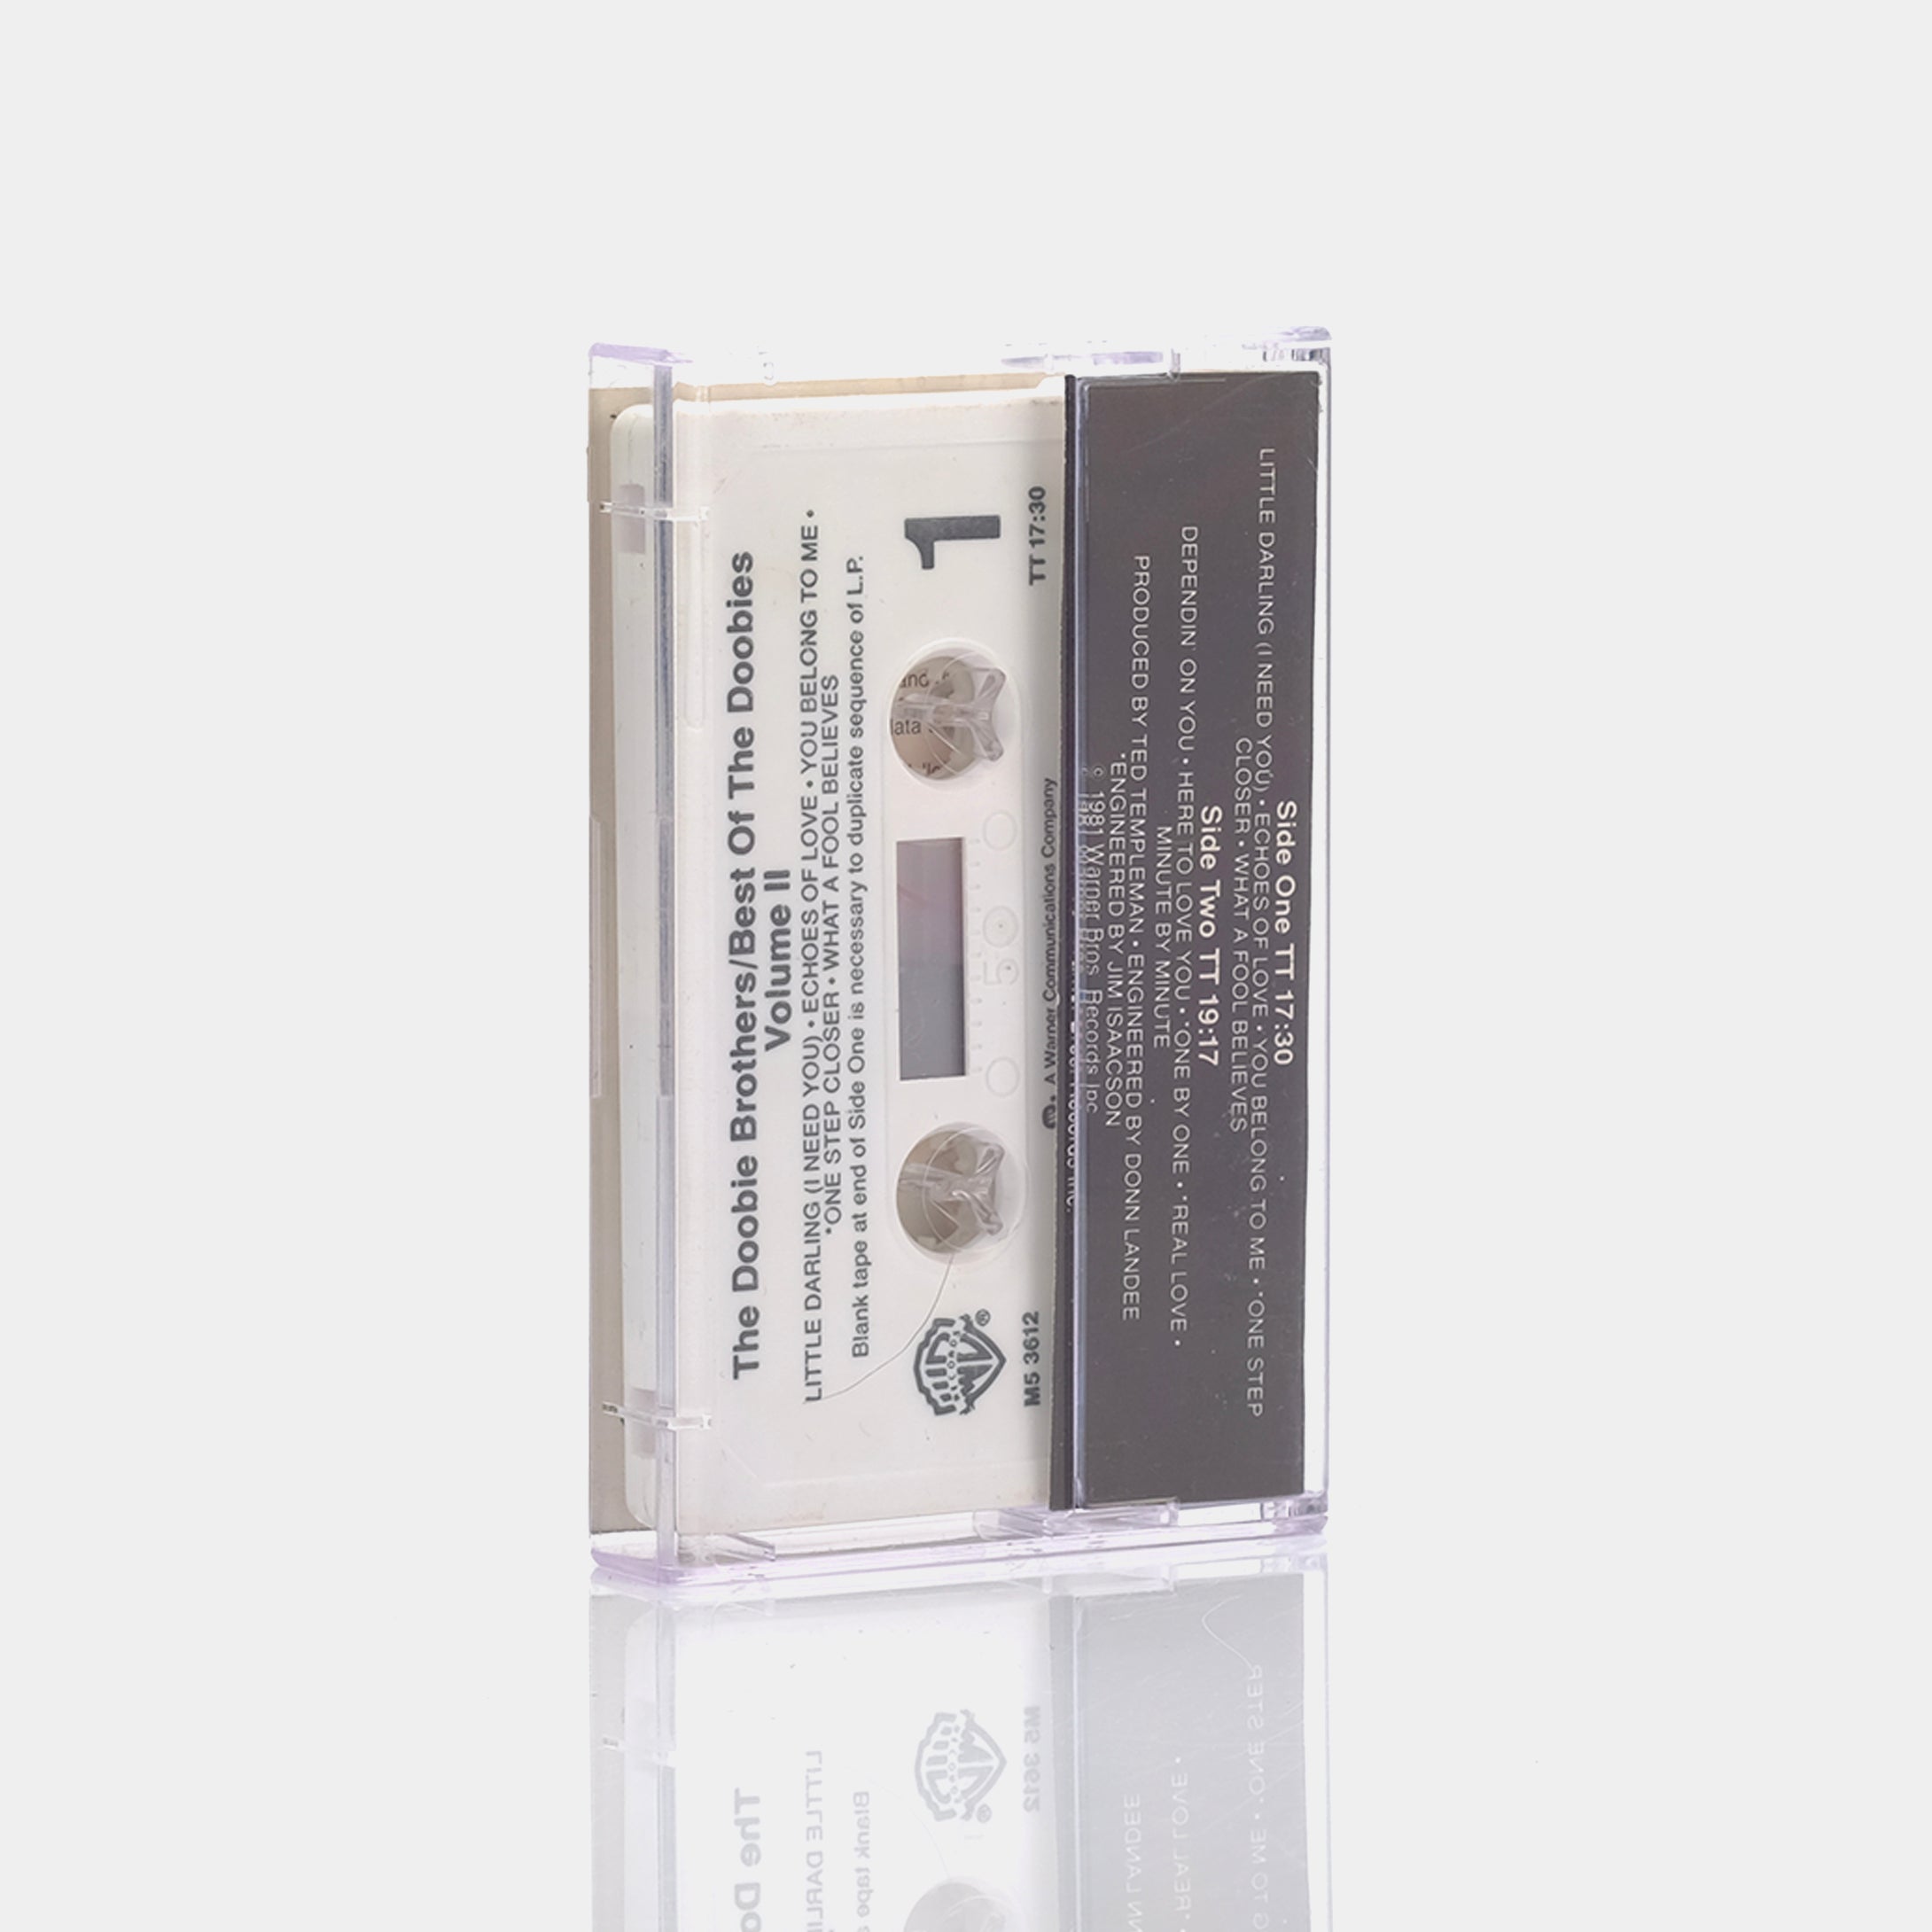 The Doobie Brothers - Best Of The Doobies Vol II Cassette Tape